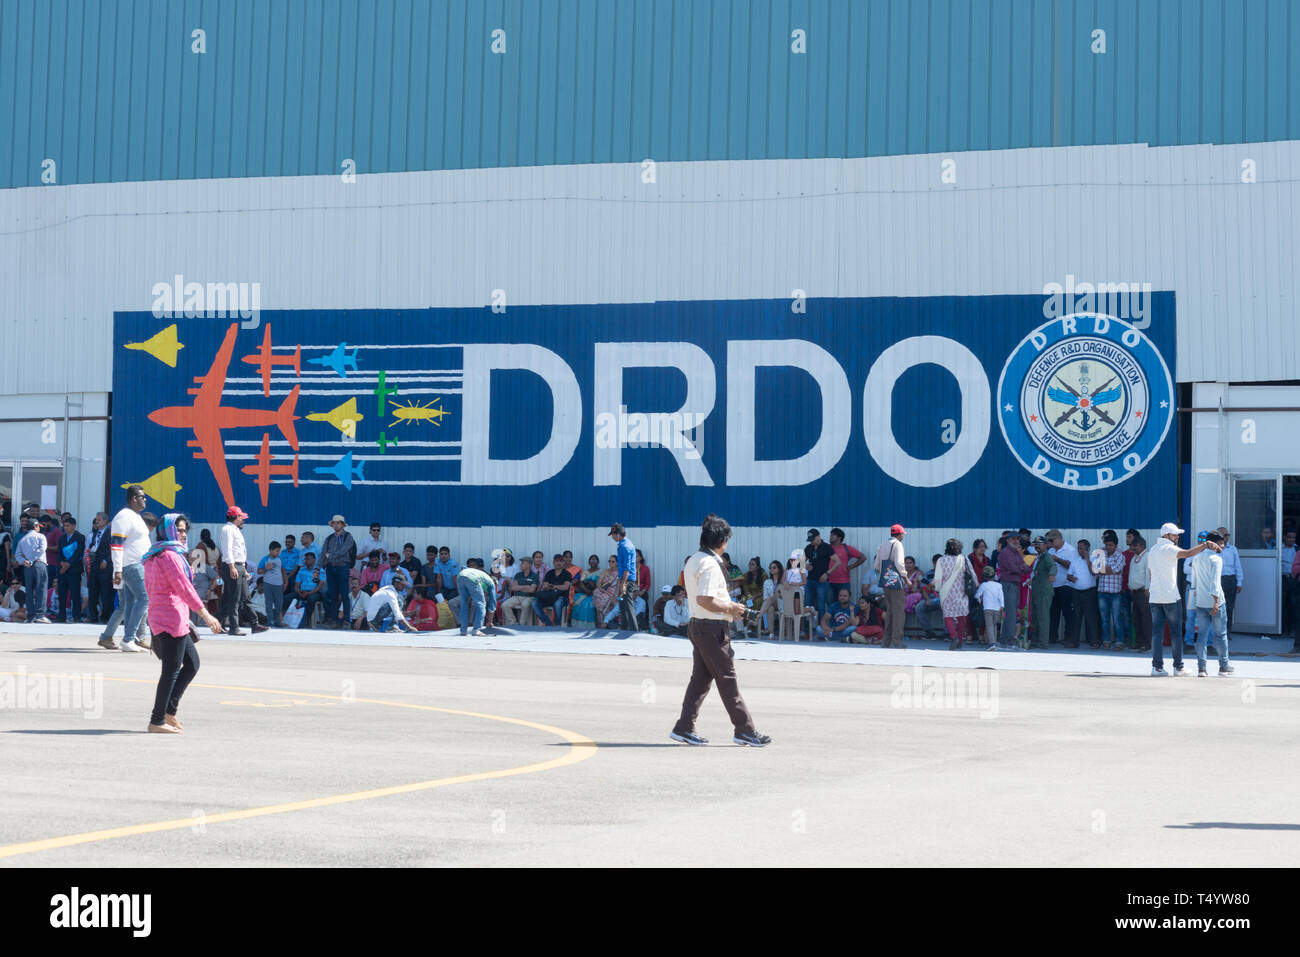 Bangalore, Inde - 22 Février 2019 : les visiteurs à l'Aero India 2019 reste de l'ombre à l'extérieur du hall DRDO. Aero India est un spectacle aérien et des biennales Banque D'Images